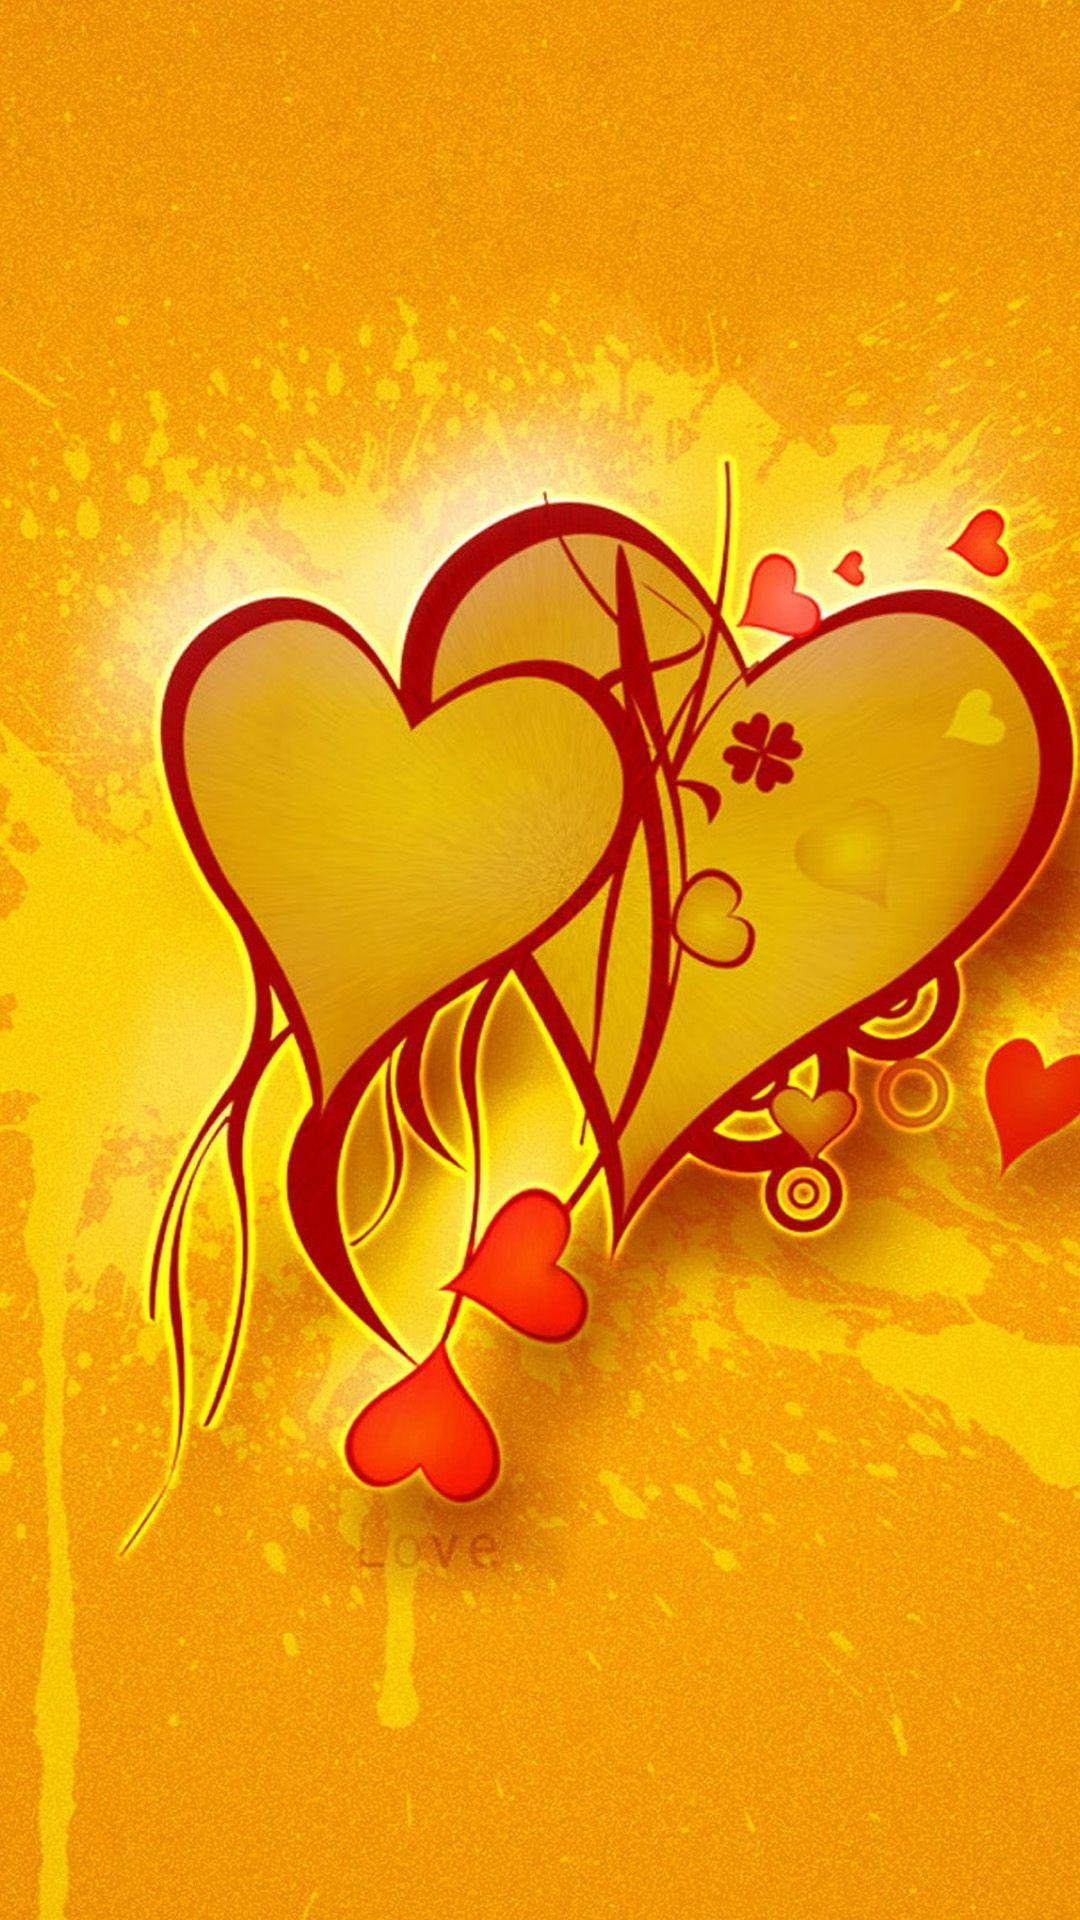 Download Orange Heart Love RoyaltyFree Stock Illustration Image  Pixabay